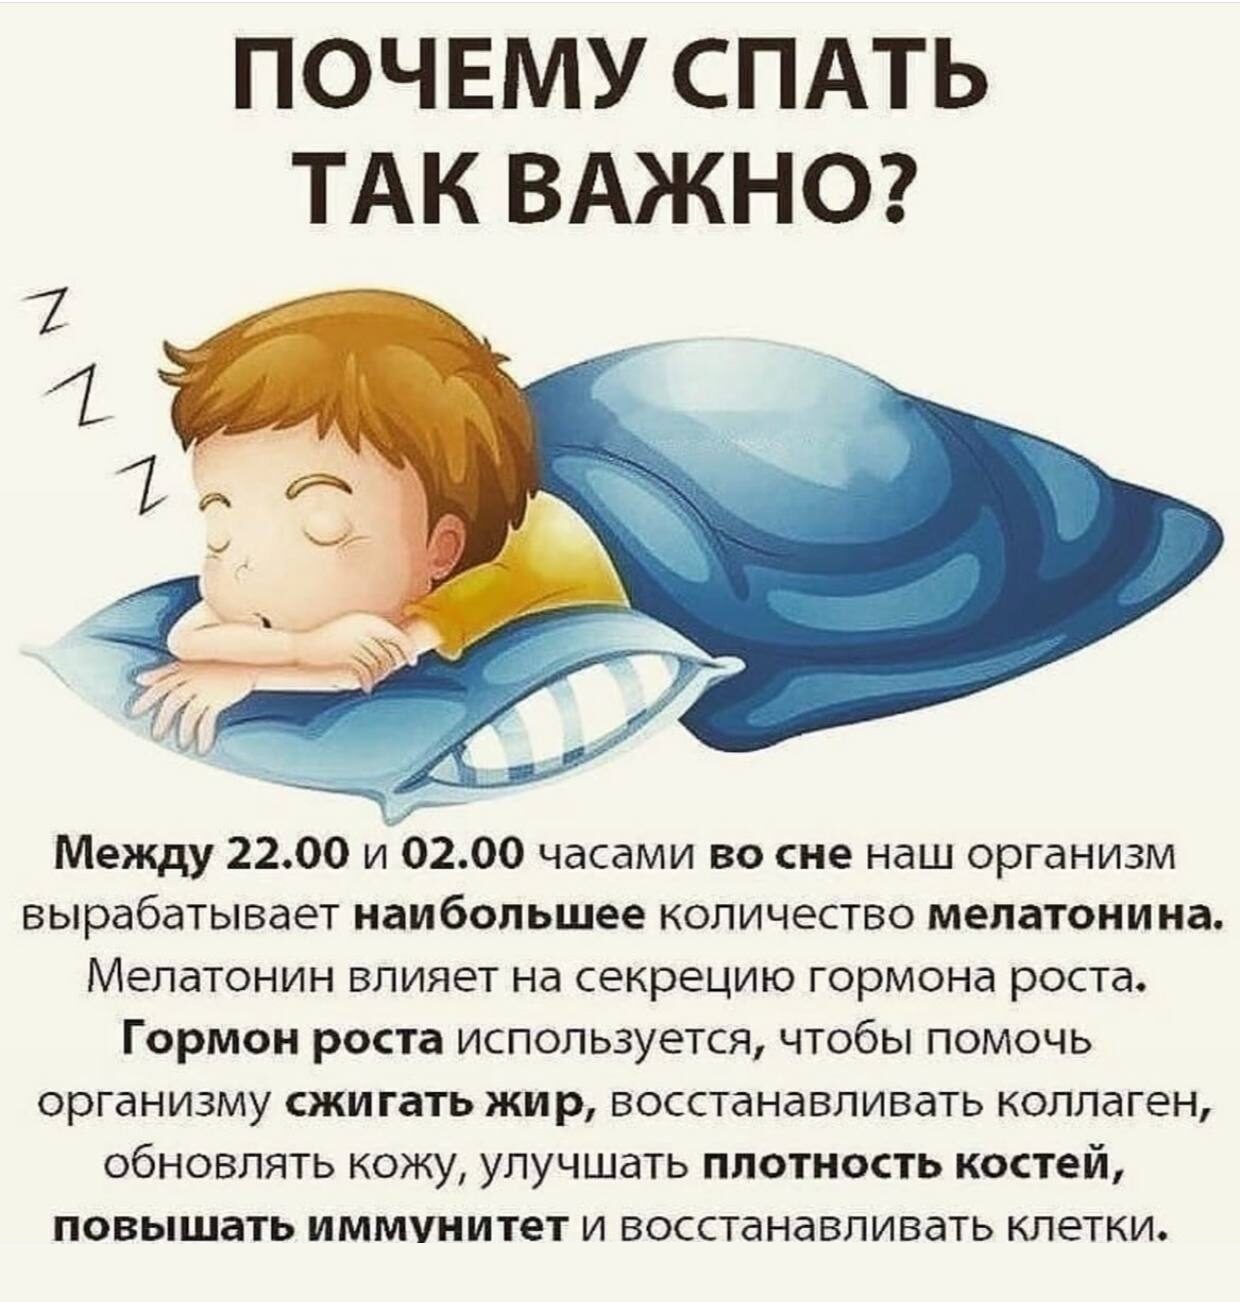 Почему когда спишь почему станешь. Почему важно спать. Причины сна. Почему сон так важен. Почему полезно спать ночью.